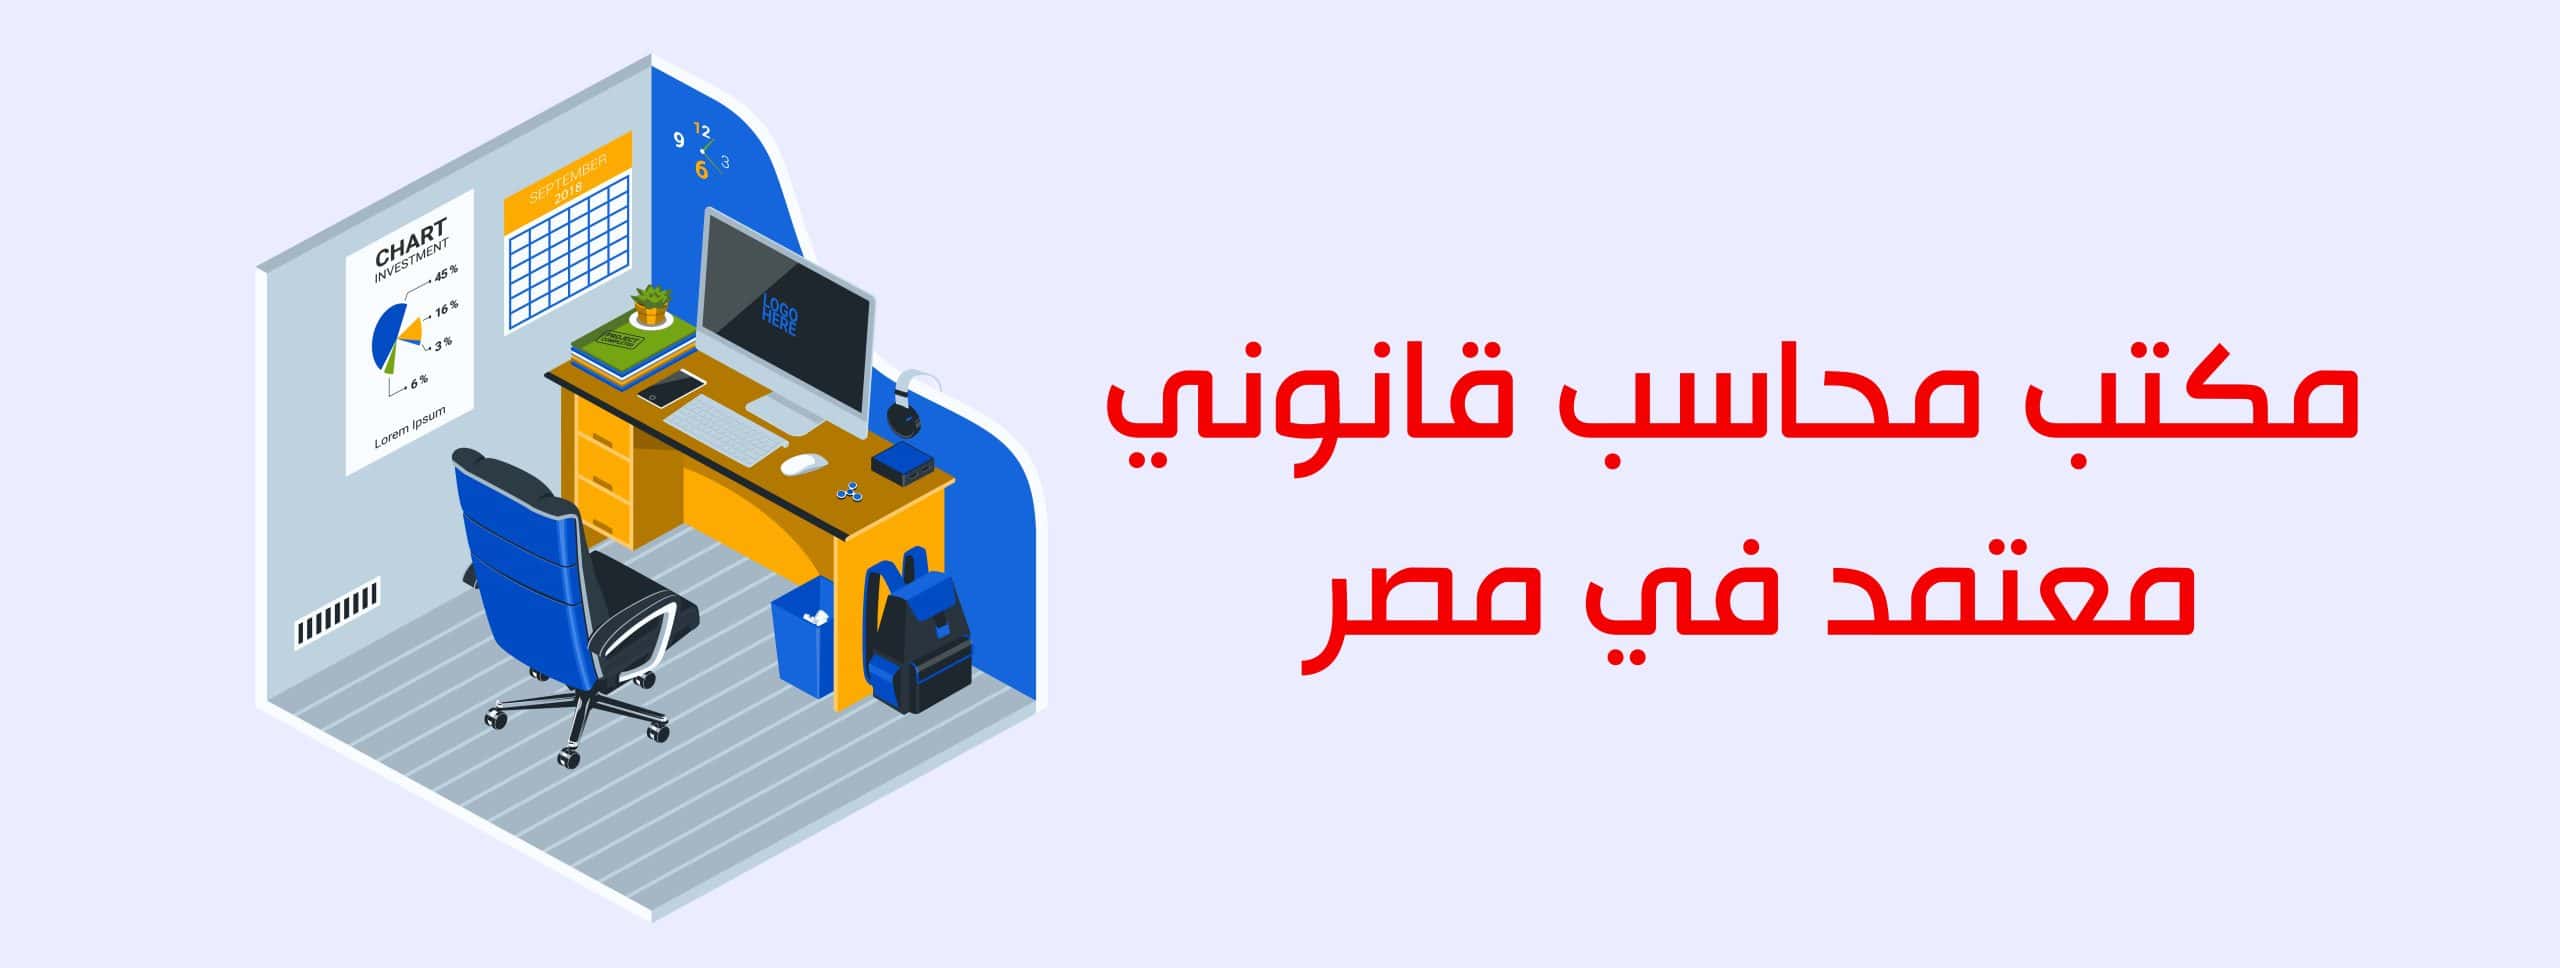 مكتب محاسب قانوني معتمد في مصر